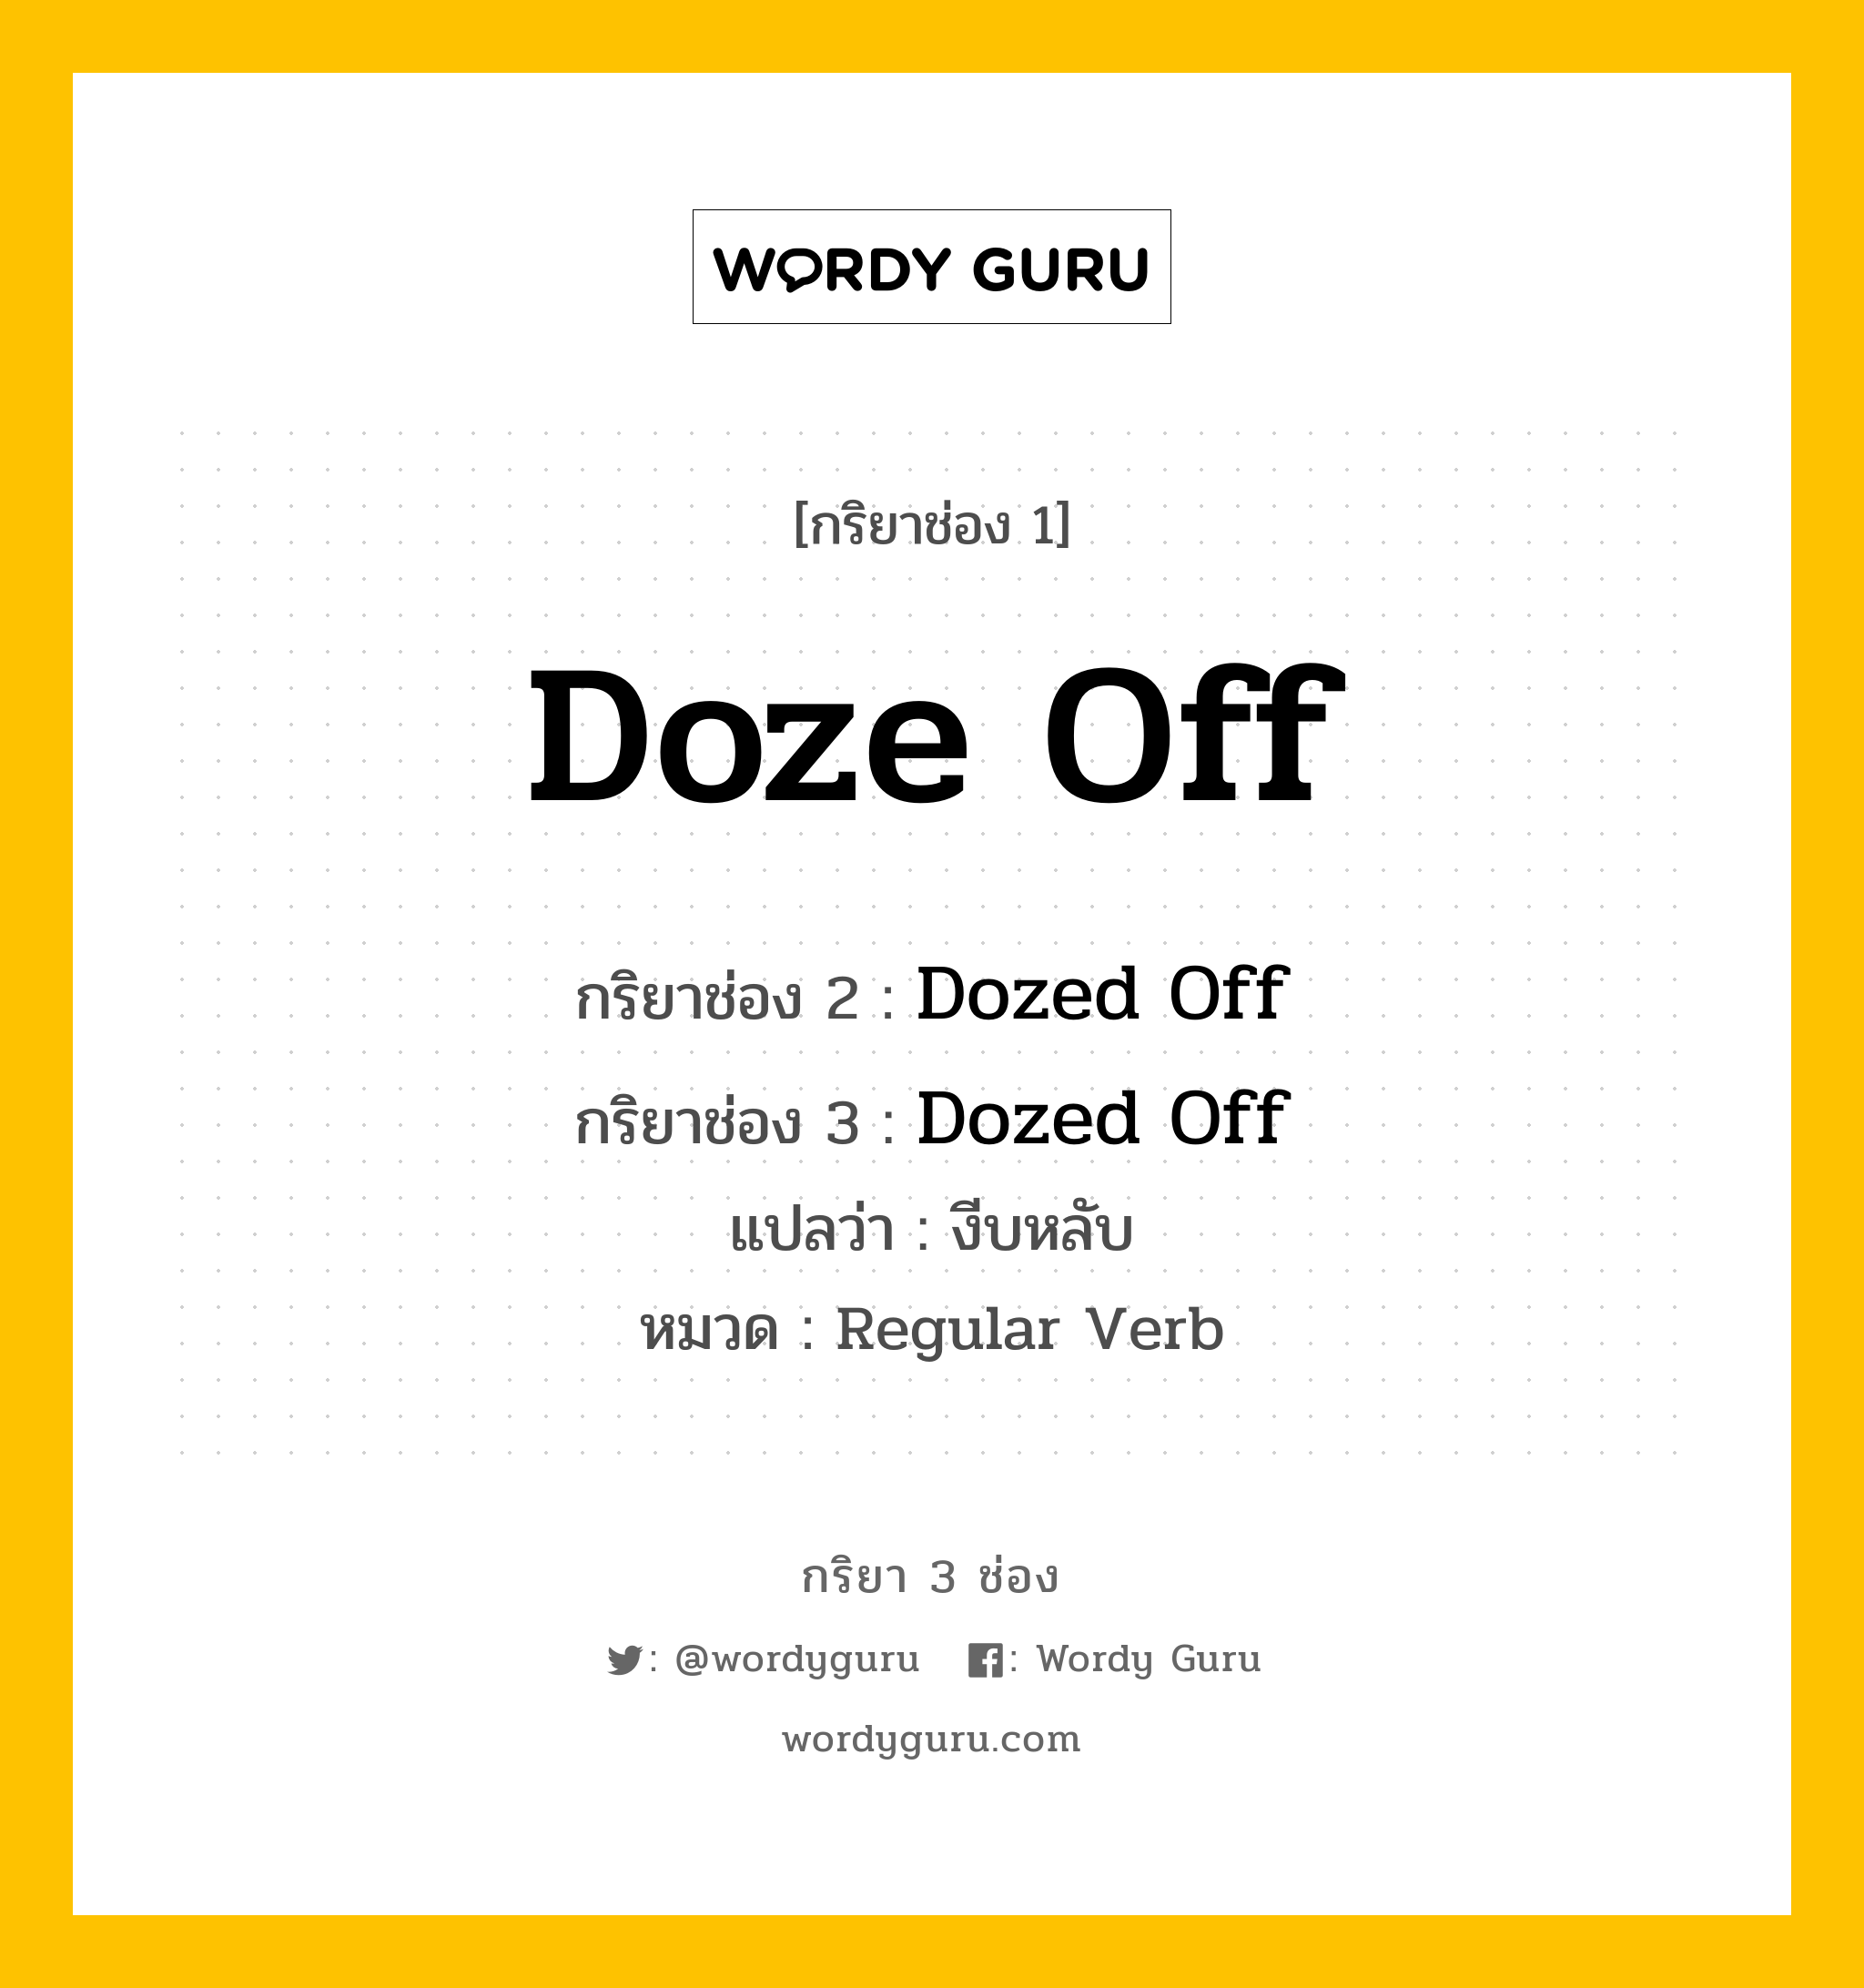 กริยา 3 ช่อง ของ Doze Off คืออะไร? มาดูคำอ่าน คำแปลกันเลย, กริยาช่อง 1 Doze Off กริยาช่อง 2 Dozed Off กริยาช่อง 3 Dozed Off แปลว่า งีบหลับ หมวด Regular Verb หมวด Regular Verb